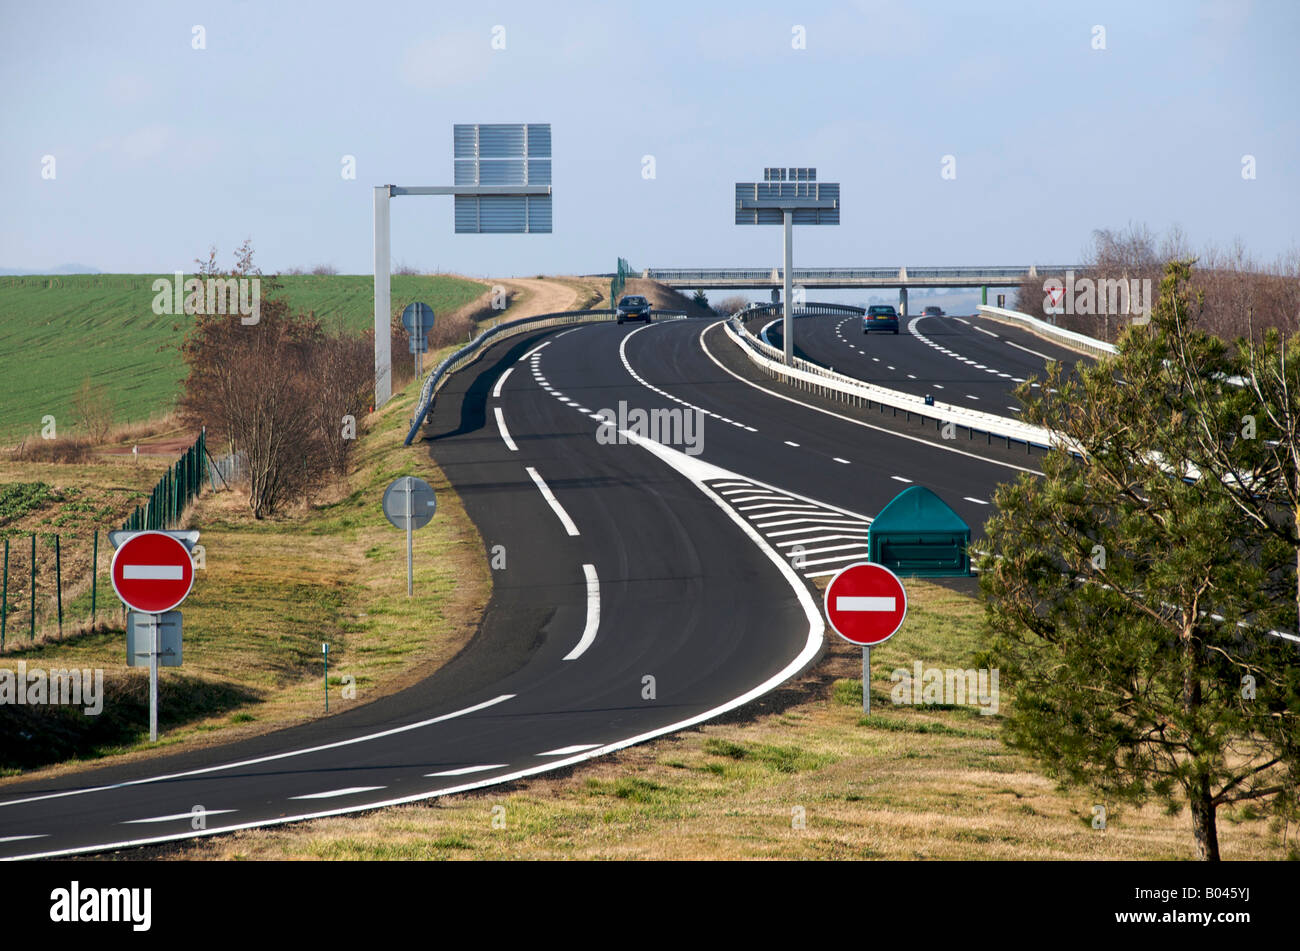 Kein Eintritt / Stoppschilder an französischen Autoroute Autobahn - Warnung zu fahren auf rechts rechts beim fahren in Frankreich / Europa Stockfoto